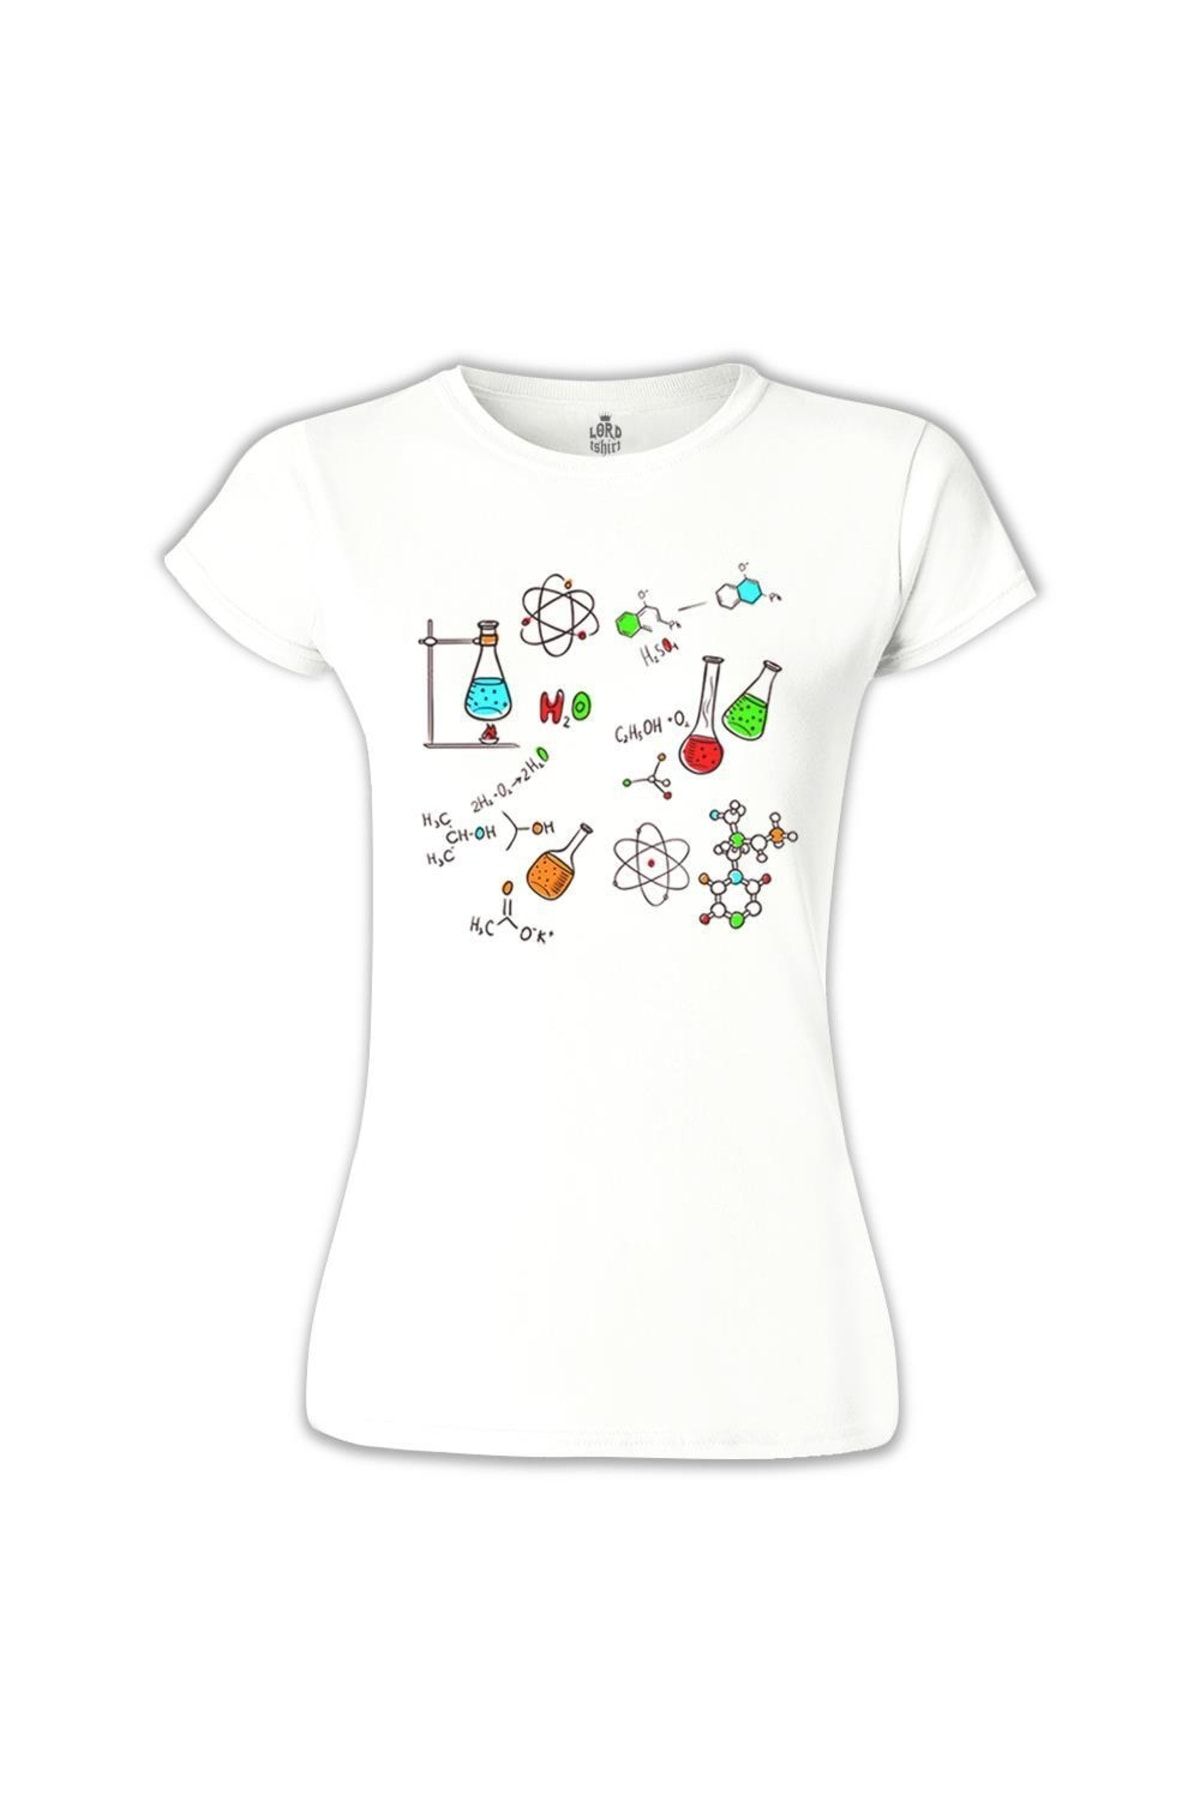 Lord T-Shirt Kadın Beyaz Kimya Formül T-shirt BB-665